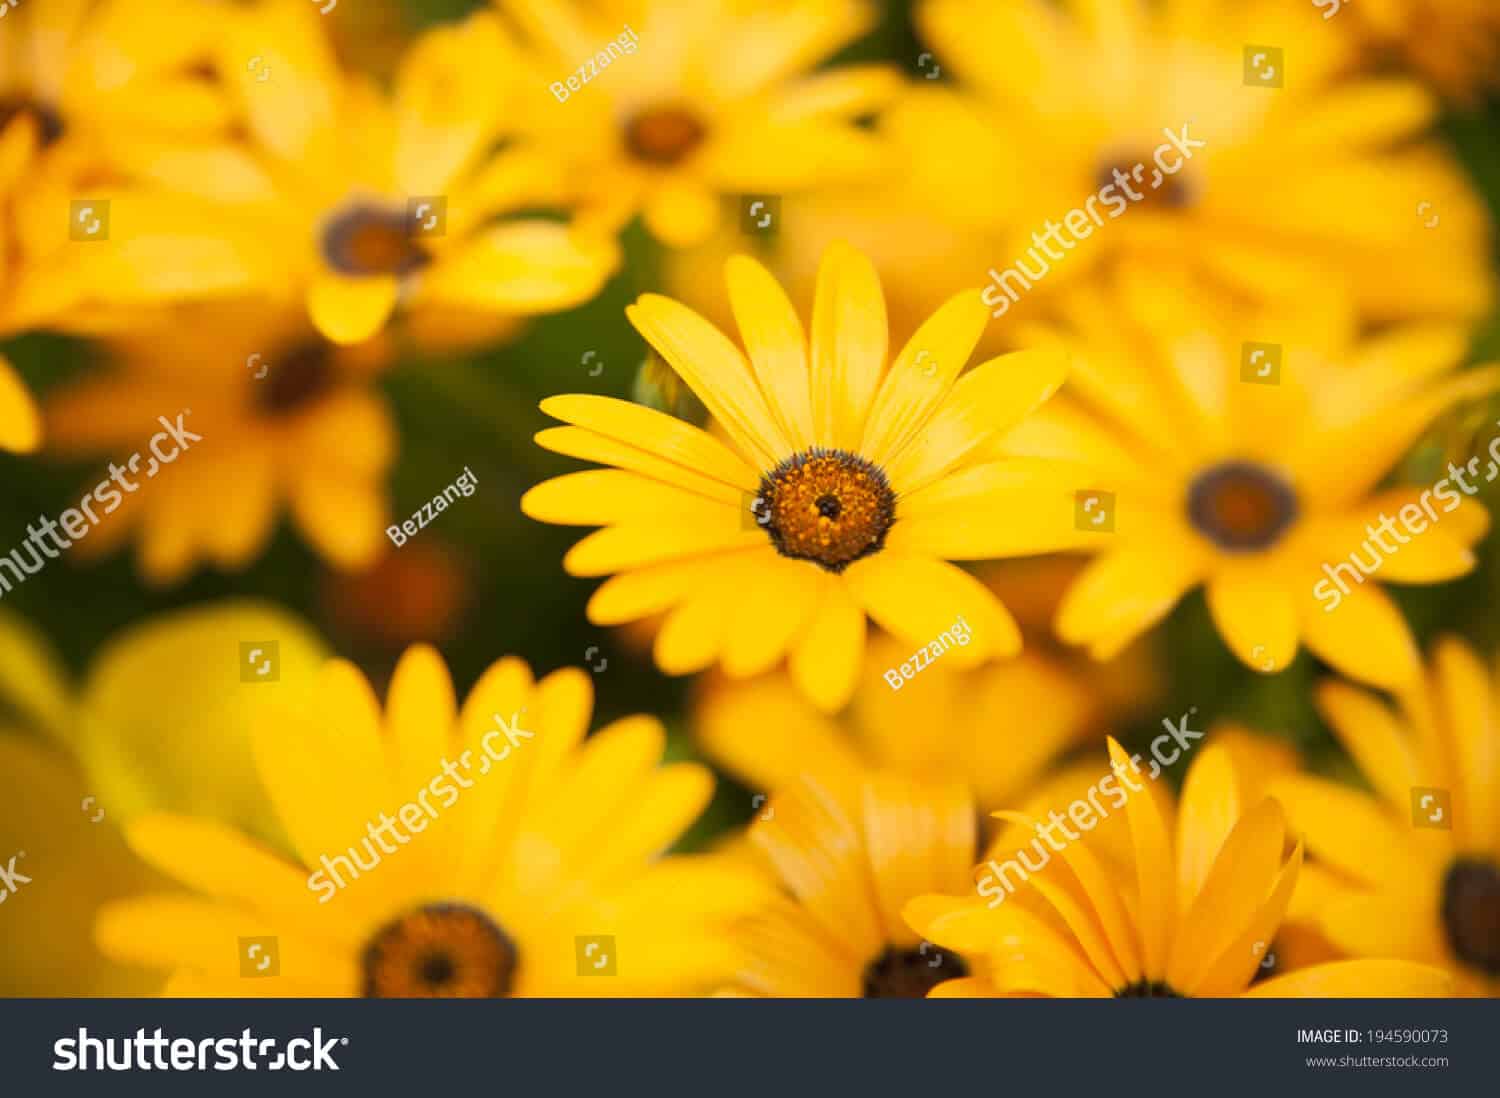 525 ngàn hình ảnh hoa cúc vàng chất lượng cao trên Shutterstock